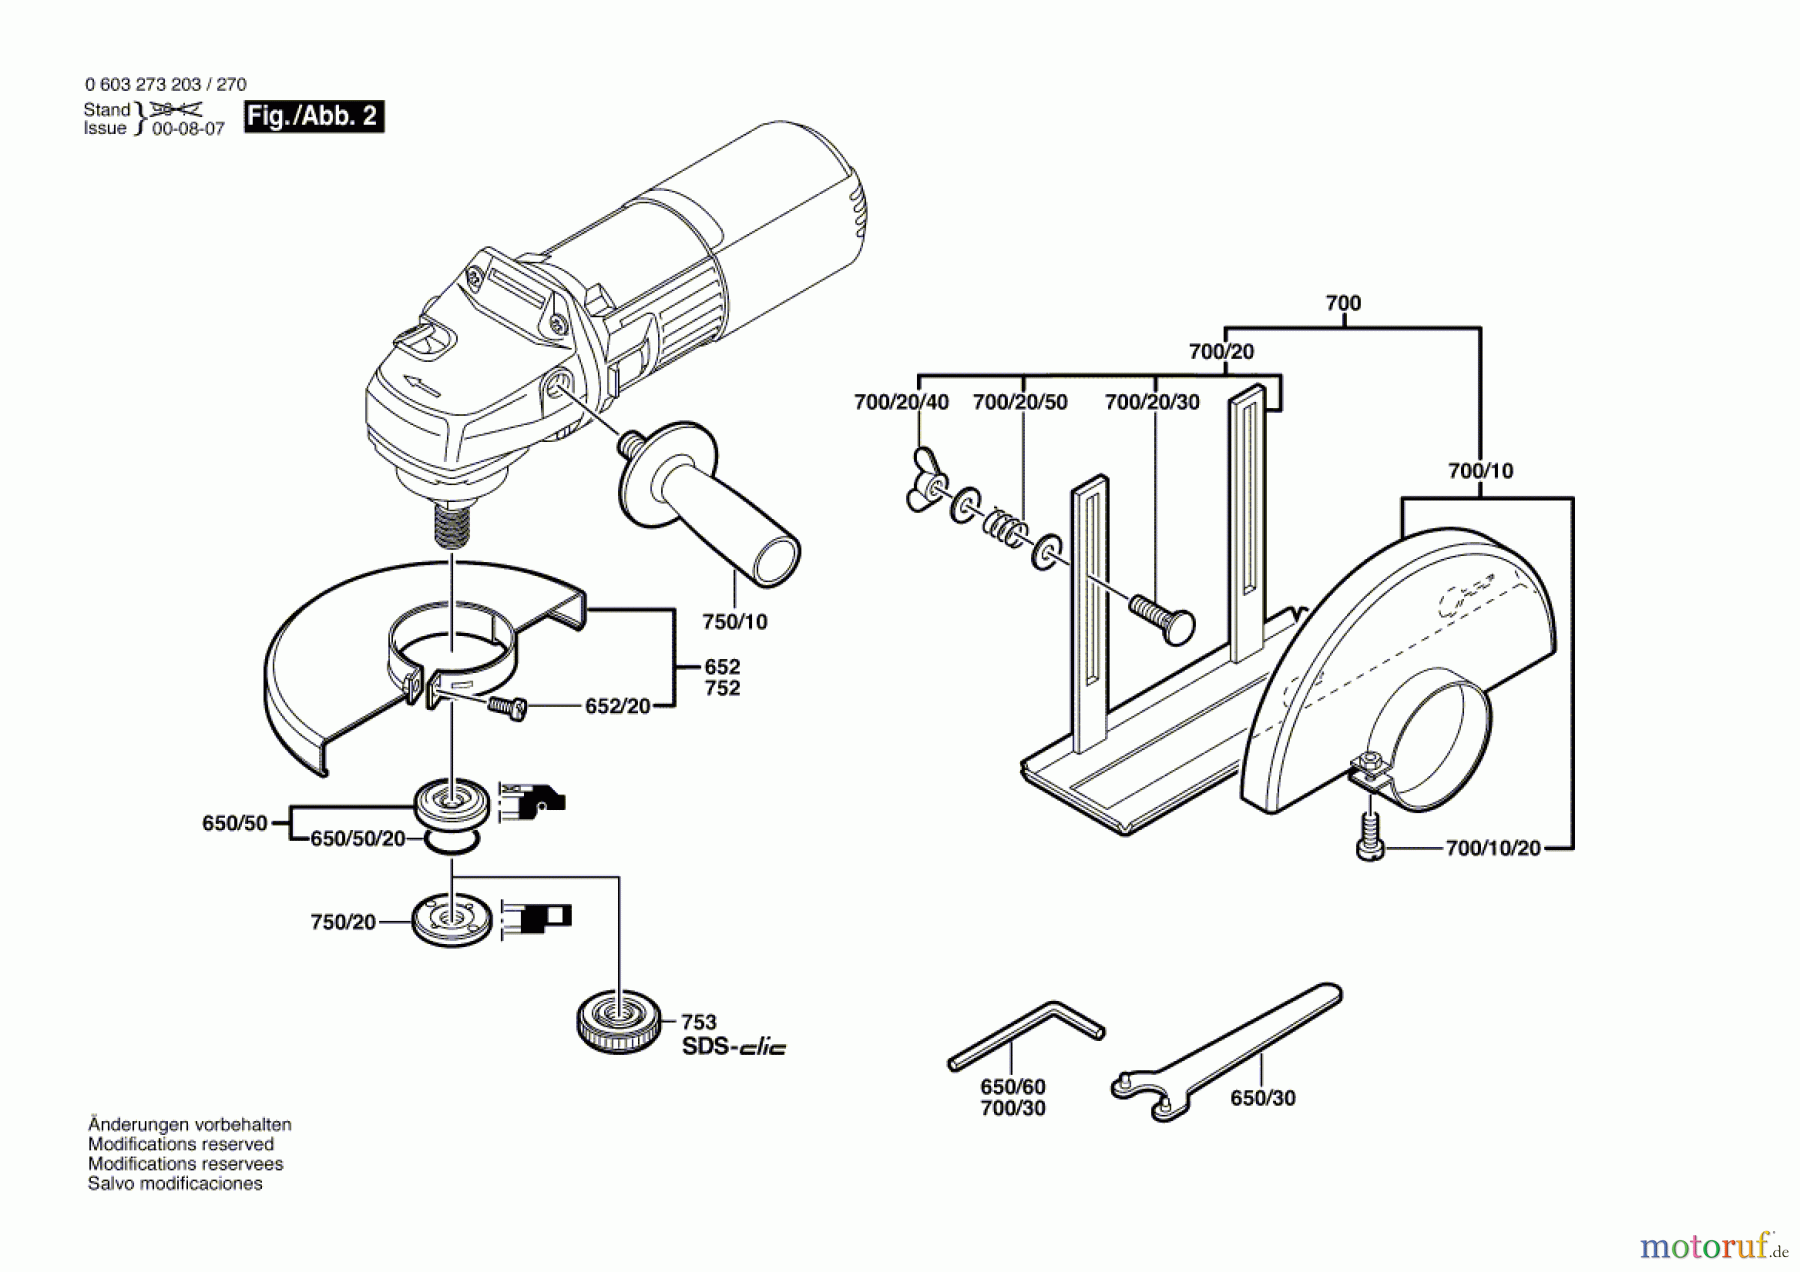  Bosch Werkzeug Winkelschleifer PWS 710 Seite 2